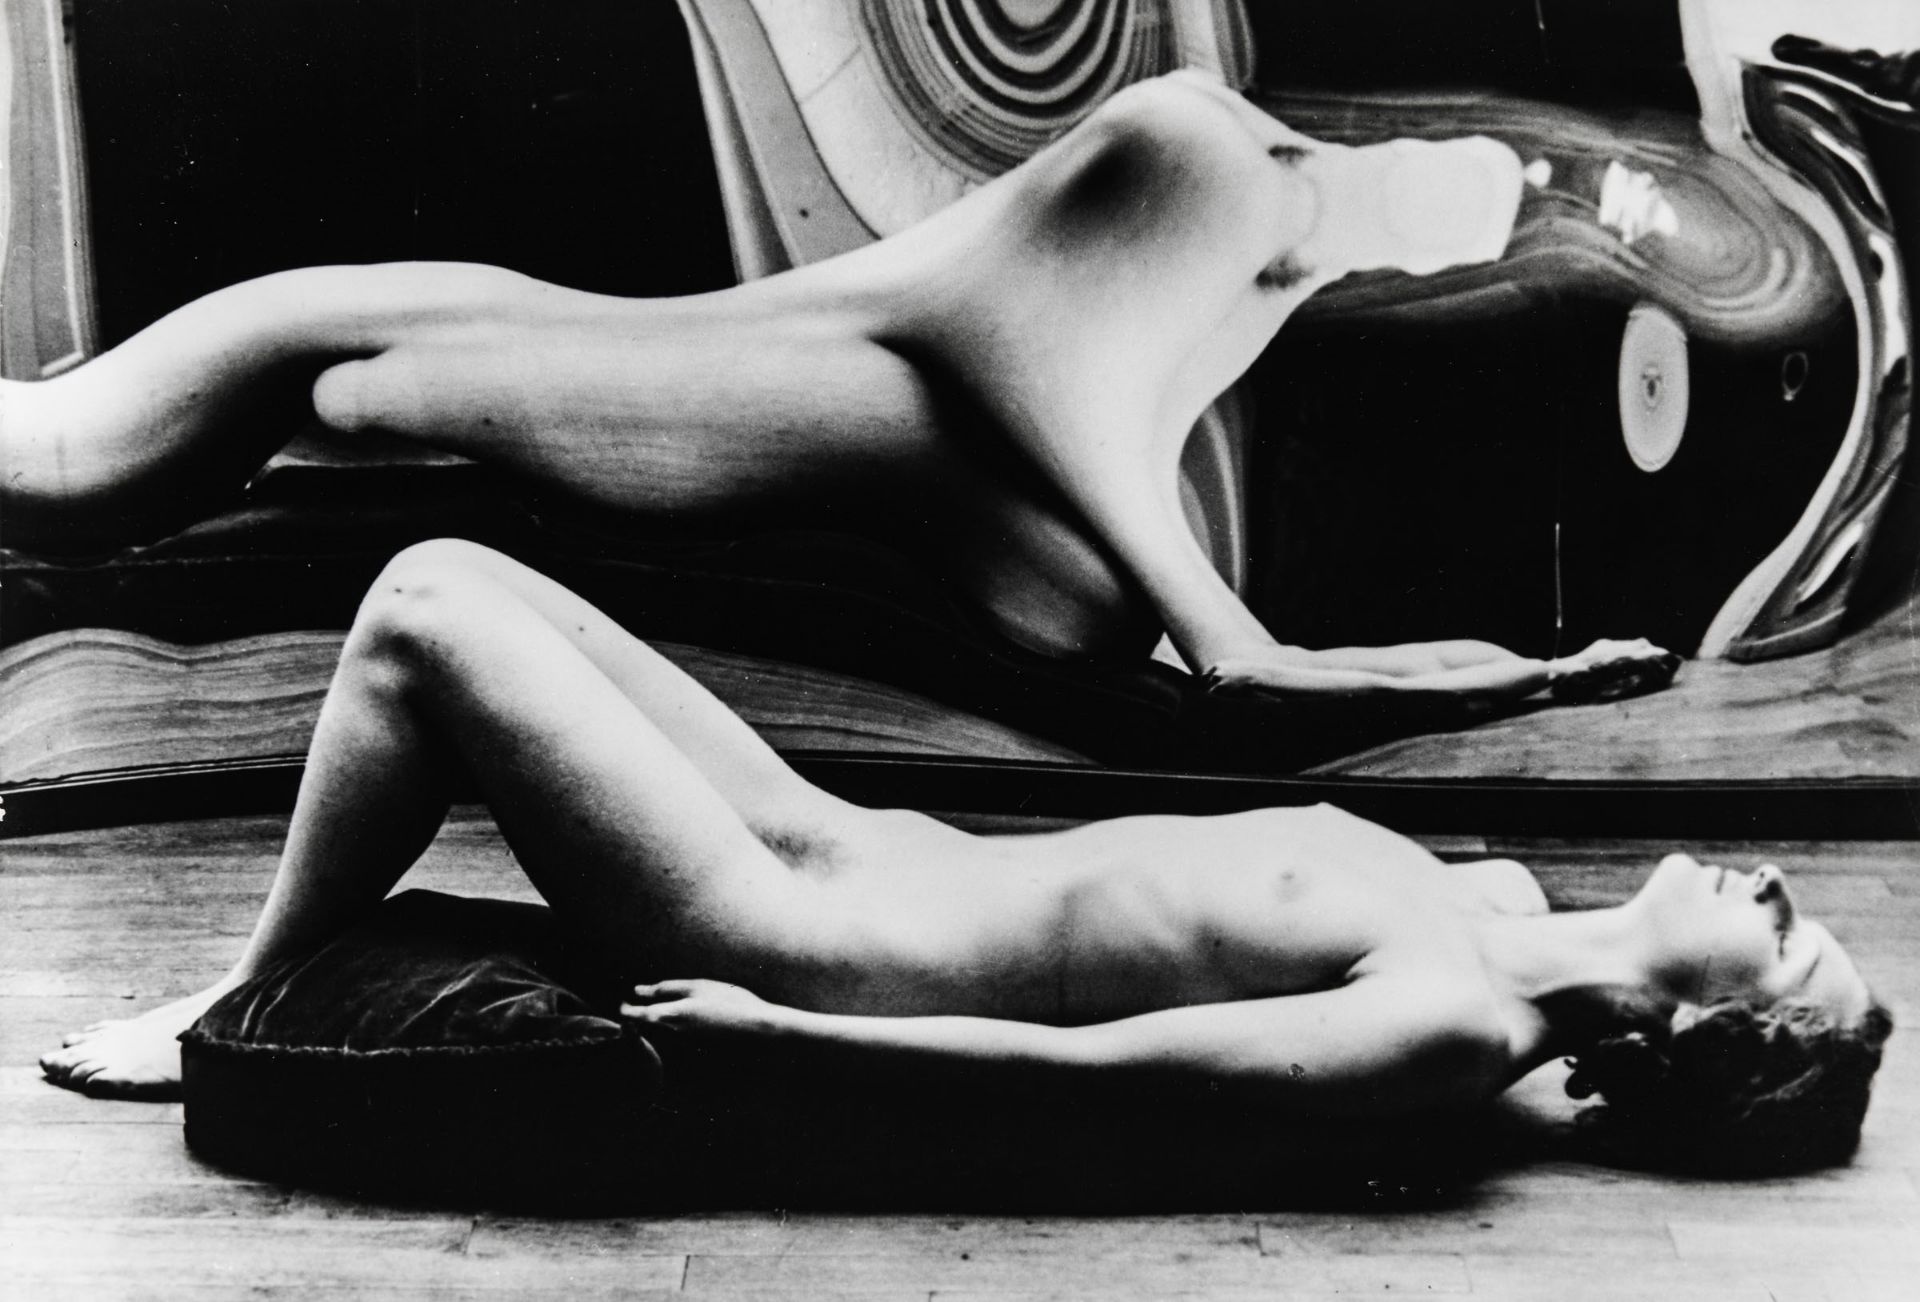 André Kertész (1894-1985), “Distorsione n.45”, Parigi, 1933 - b/w print. Label [...]